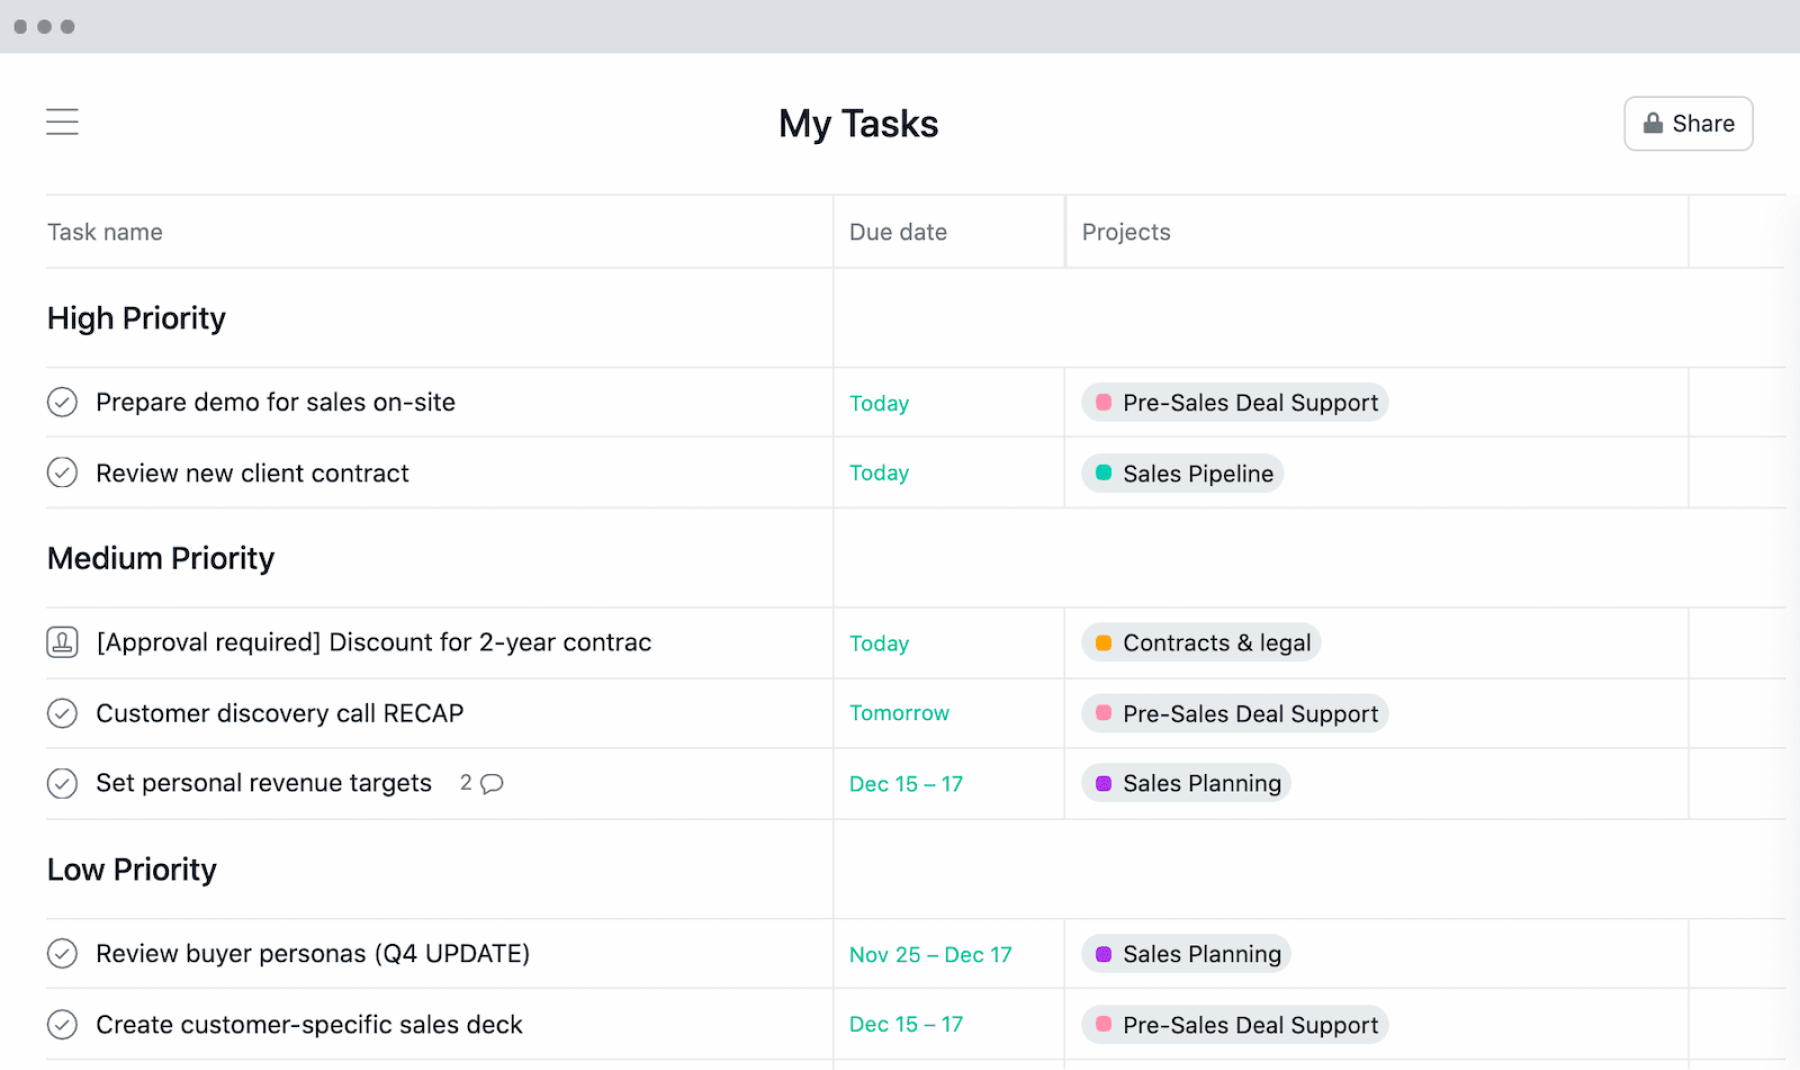 [Mis tareas] Lista de tareas pendientes en la sección Mis tareas de Asana, una herramienta de gestión de proyectos con formato de hoja de cálculo con fechas de entrega y prioridades